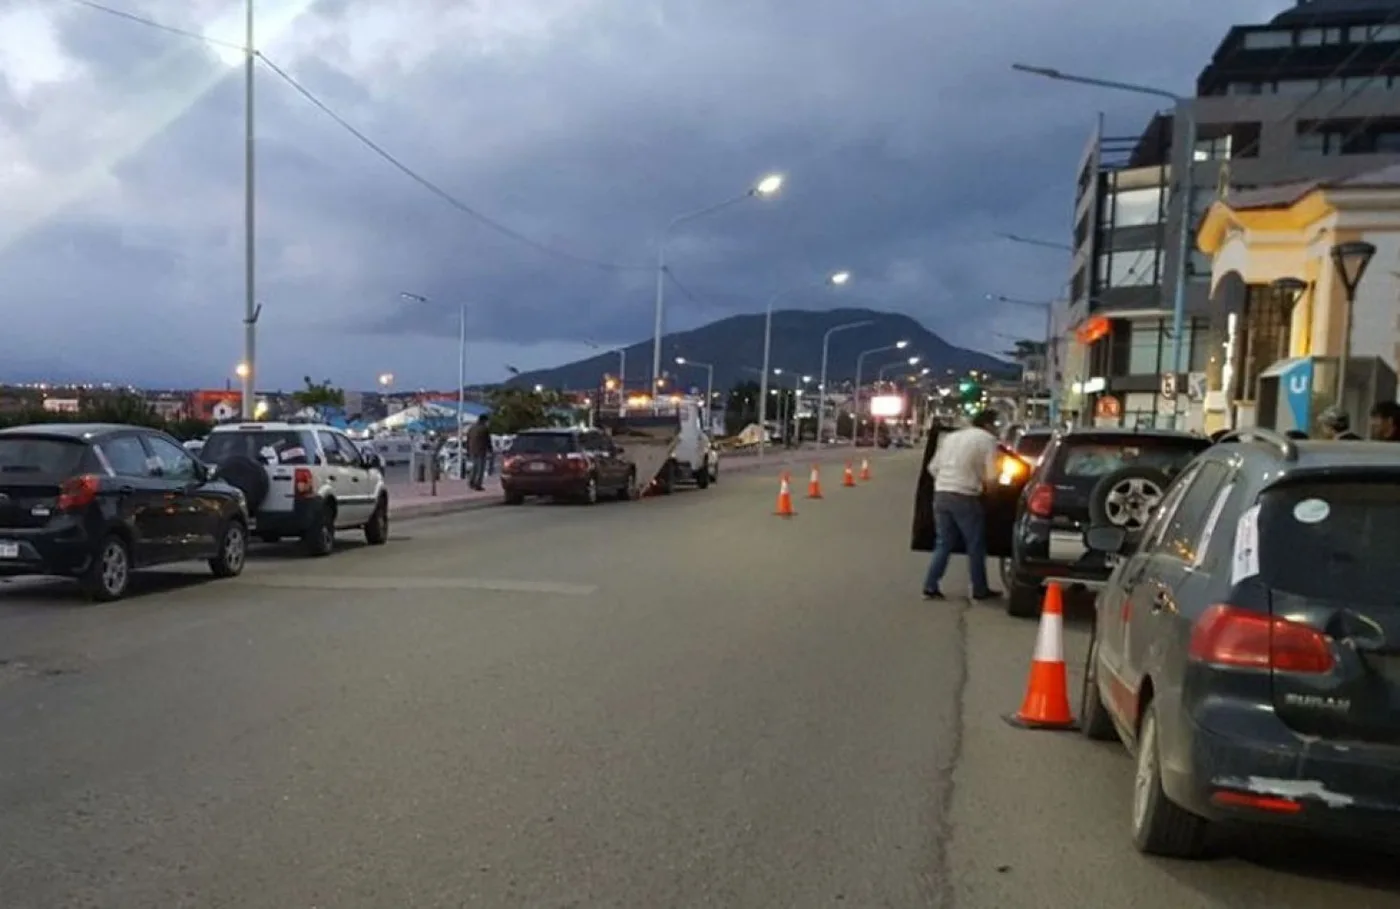 Alarma la cantidad de infracciones de Tránsito en Ushuaia